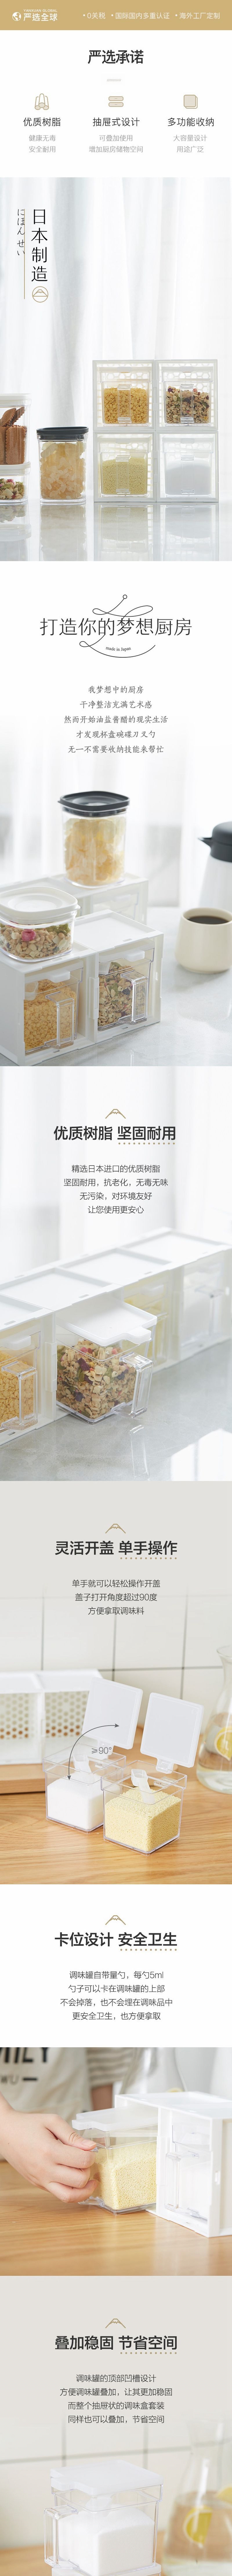 【美仓发货 5-7日达】网易严选 日本制造 抽屉式厨房调味罐